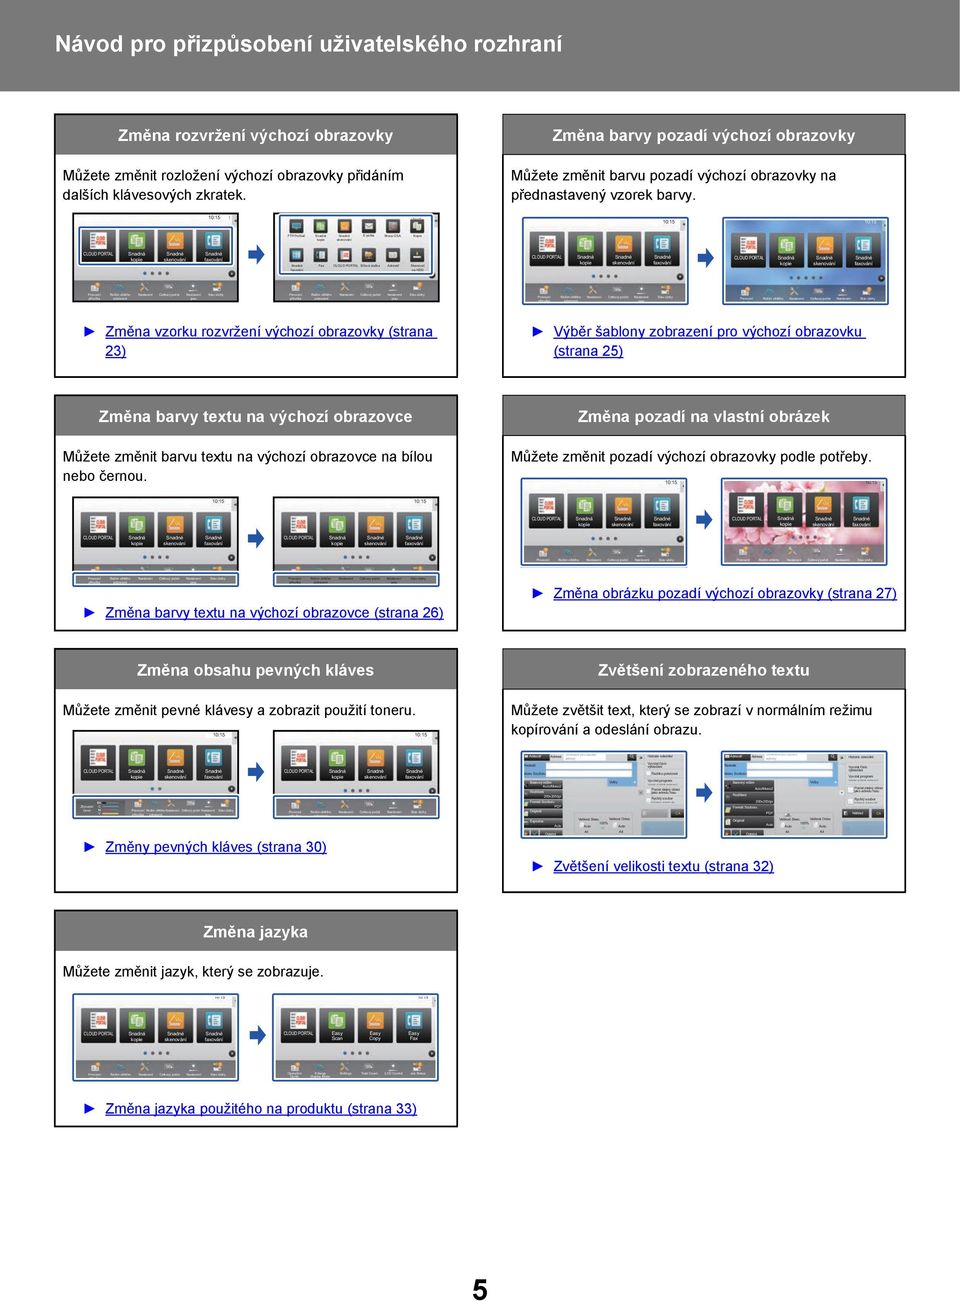 FTP/Počítač E-pošta Sharp OSA Kopie Fax Síťová složka Adresář Skenovat na HDD Změna vzorku rozvržení výchozí obrazovky (strana ) Výběr šablony pro výchozí obrazovku (strana 5) Změna barvy textu na